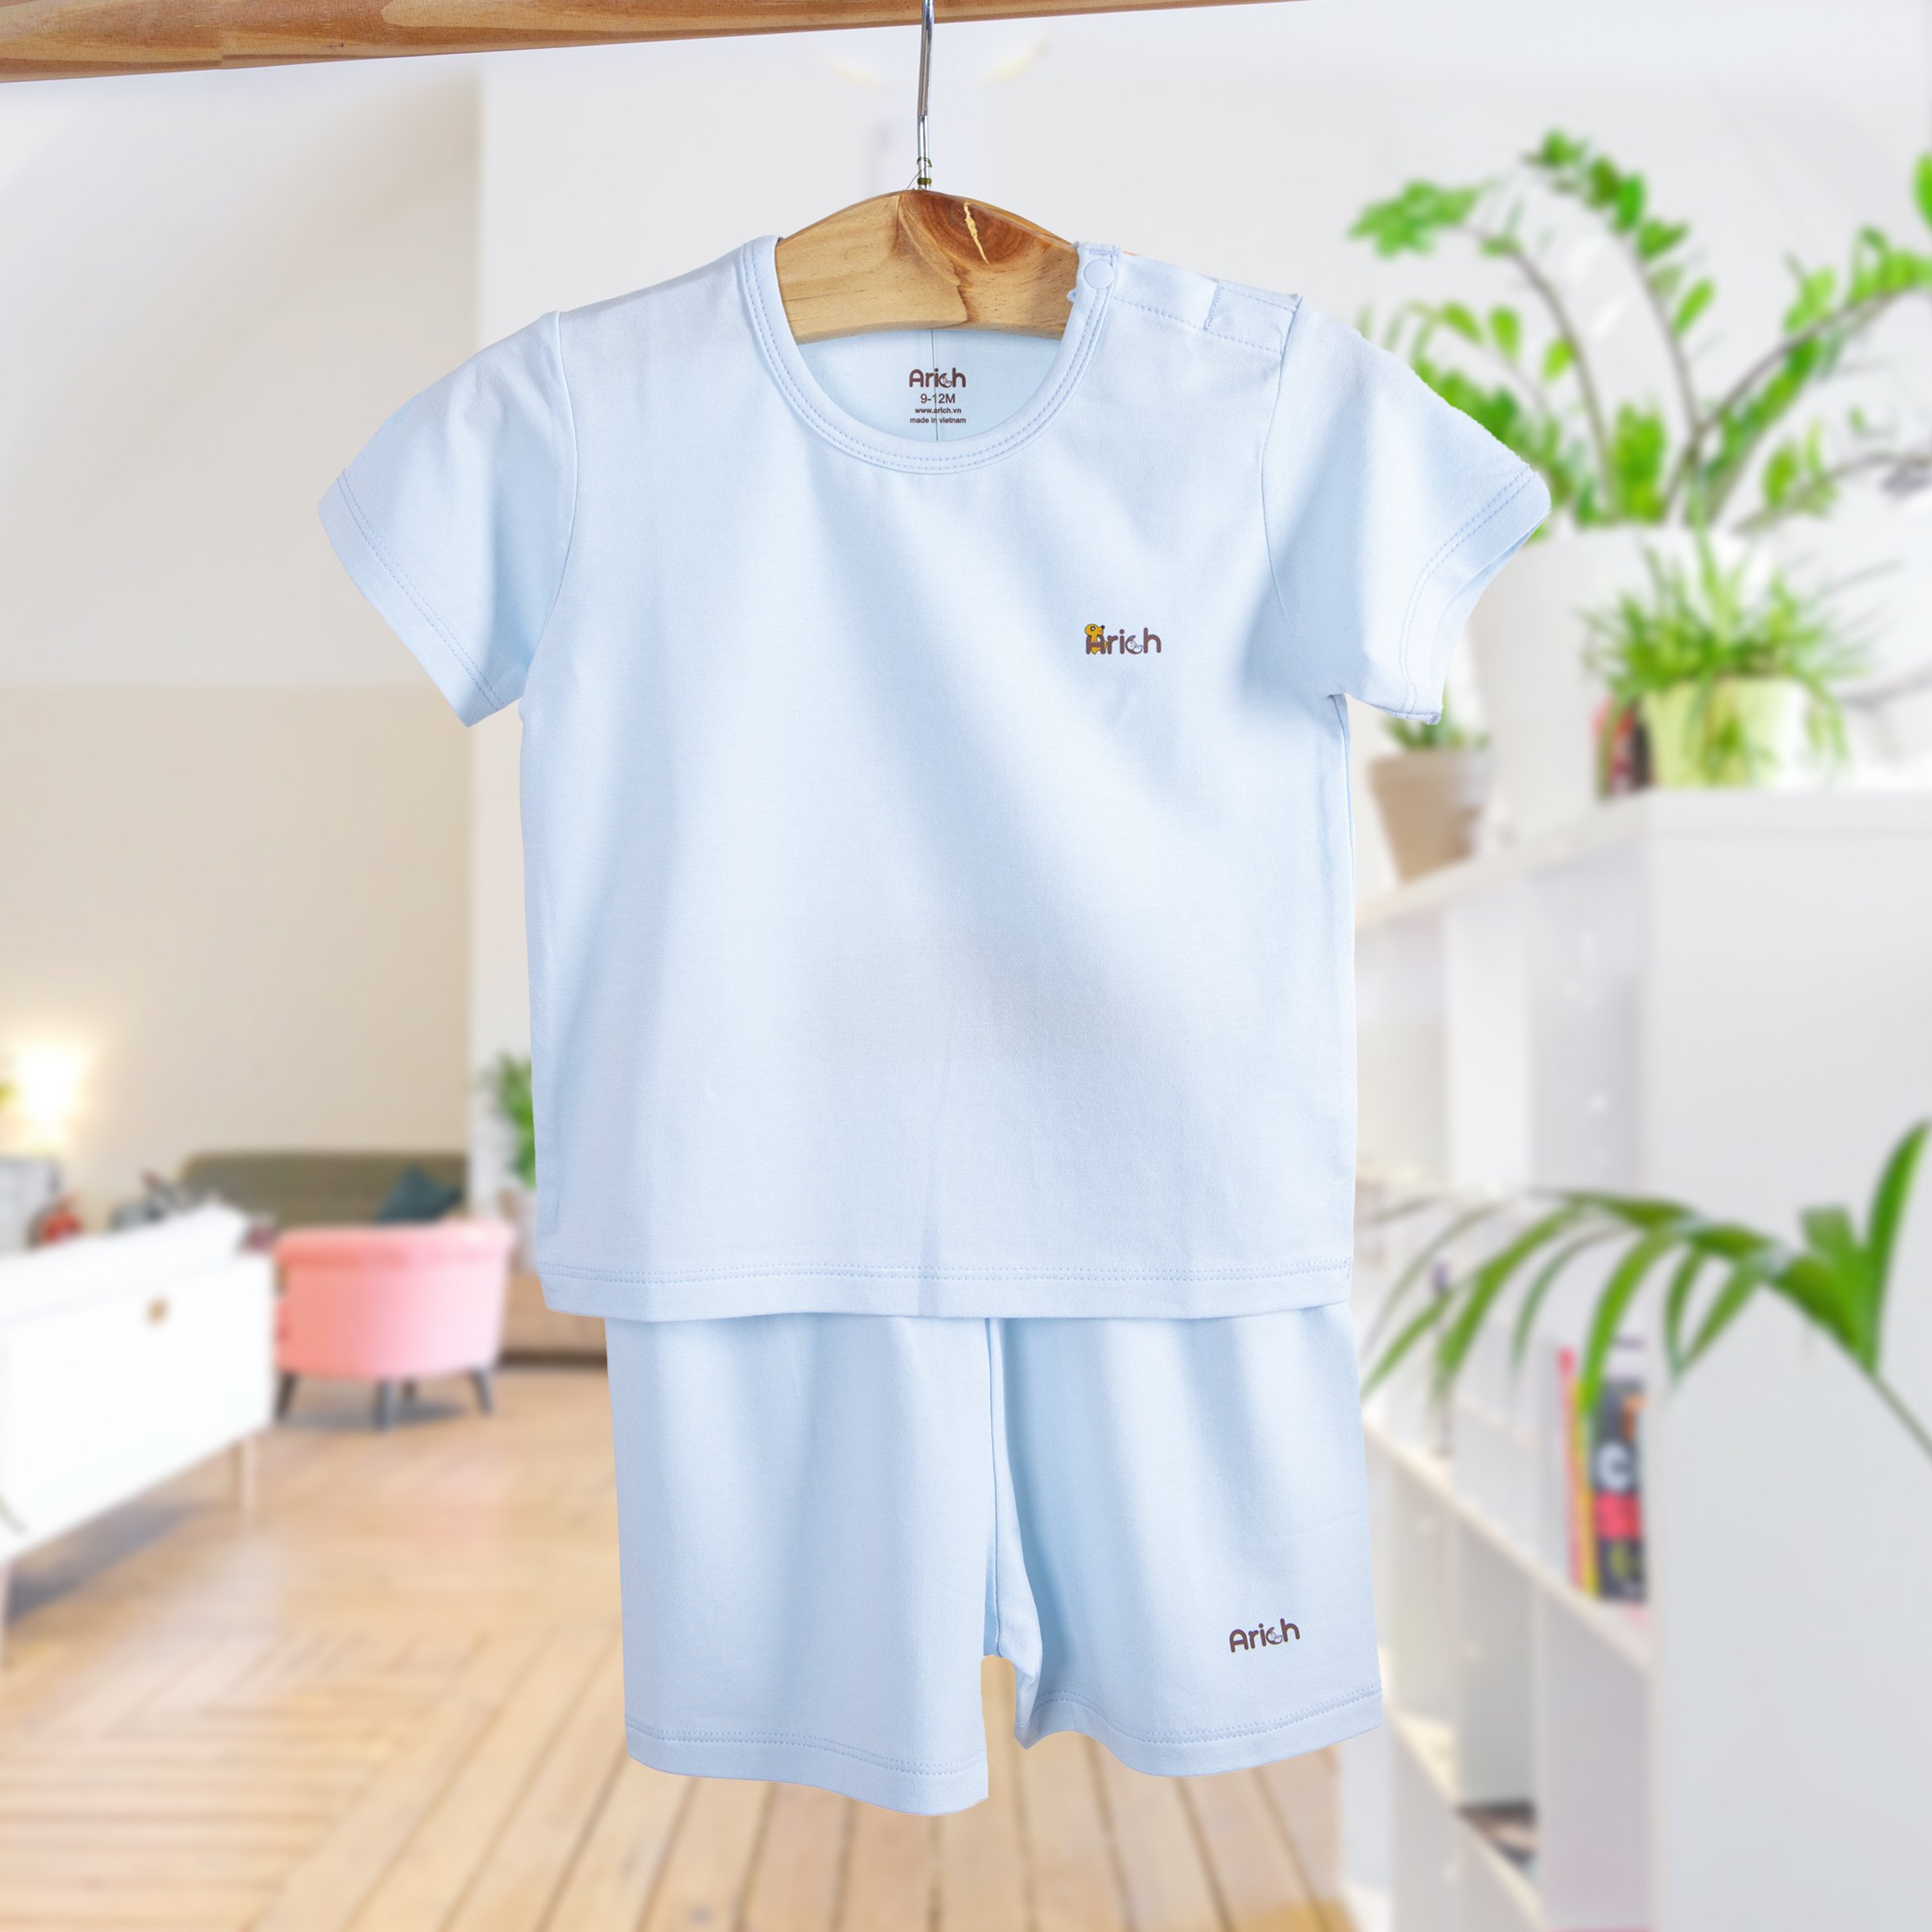 Bộ quần áo ngắn tay màu trơn vải sợi tre arich  size từ 6 tháng đến 5 tuổi - ảnh sản phẩm 6